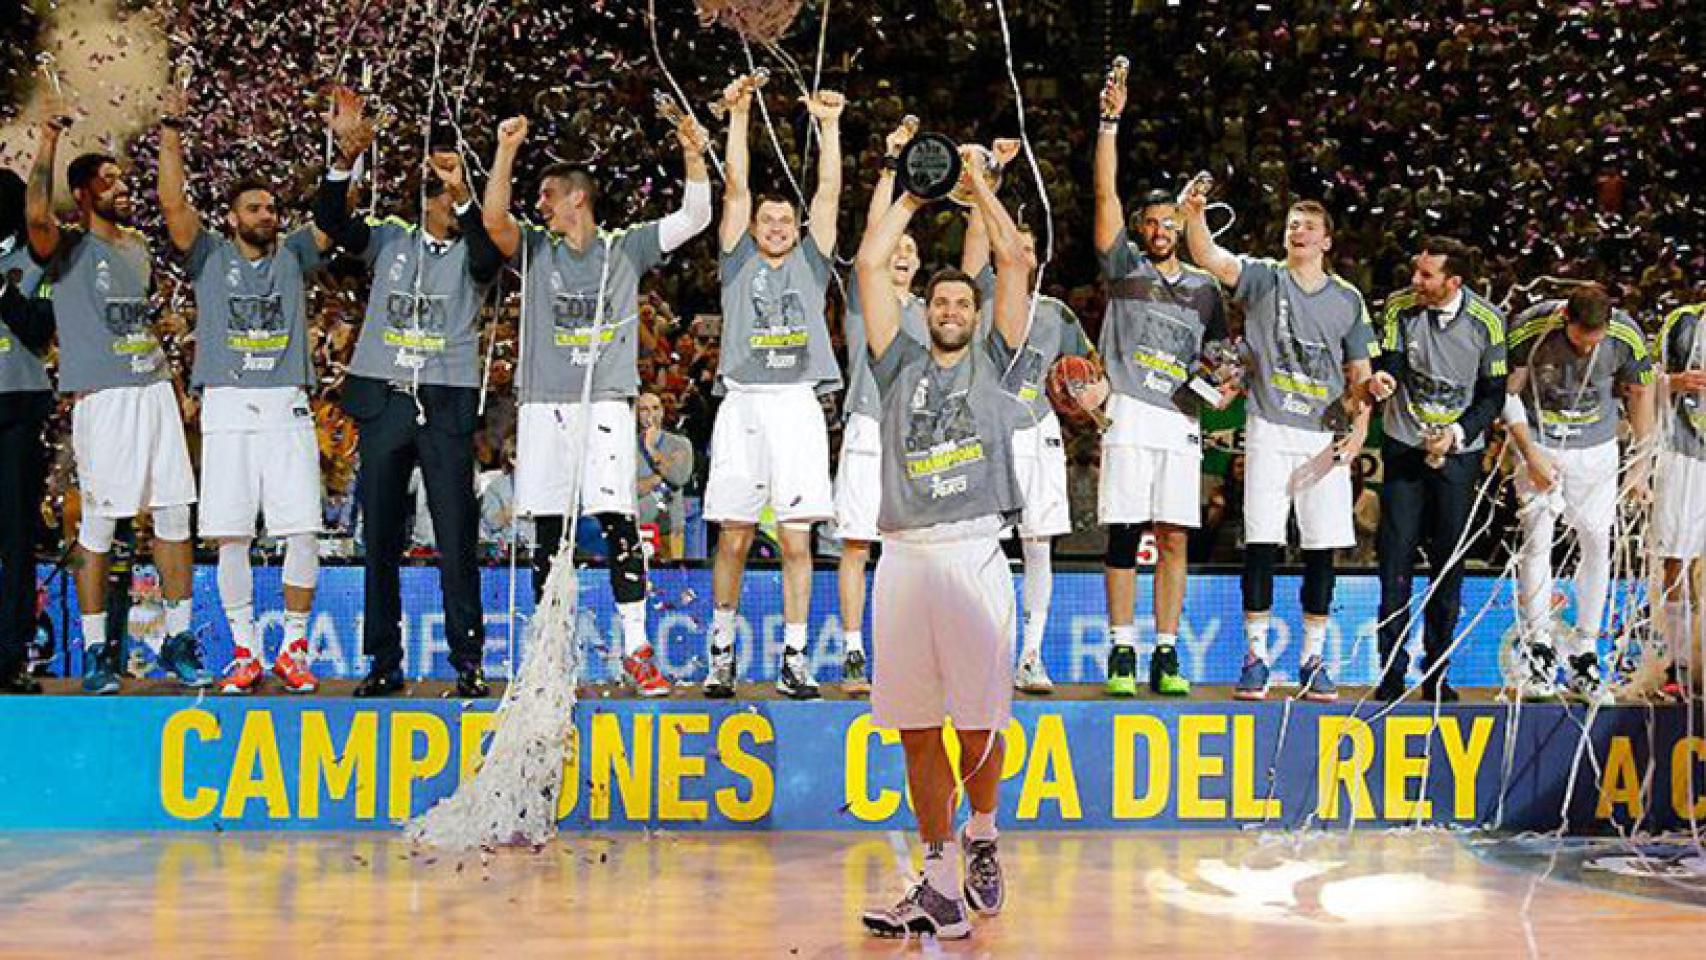 El Real Madrid Baloncesto celebra la Copa del Rey de A Coruña